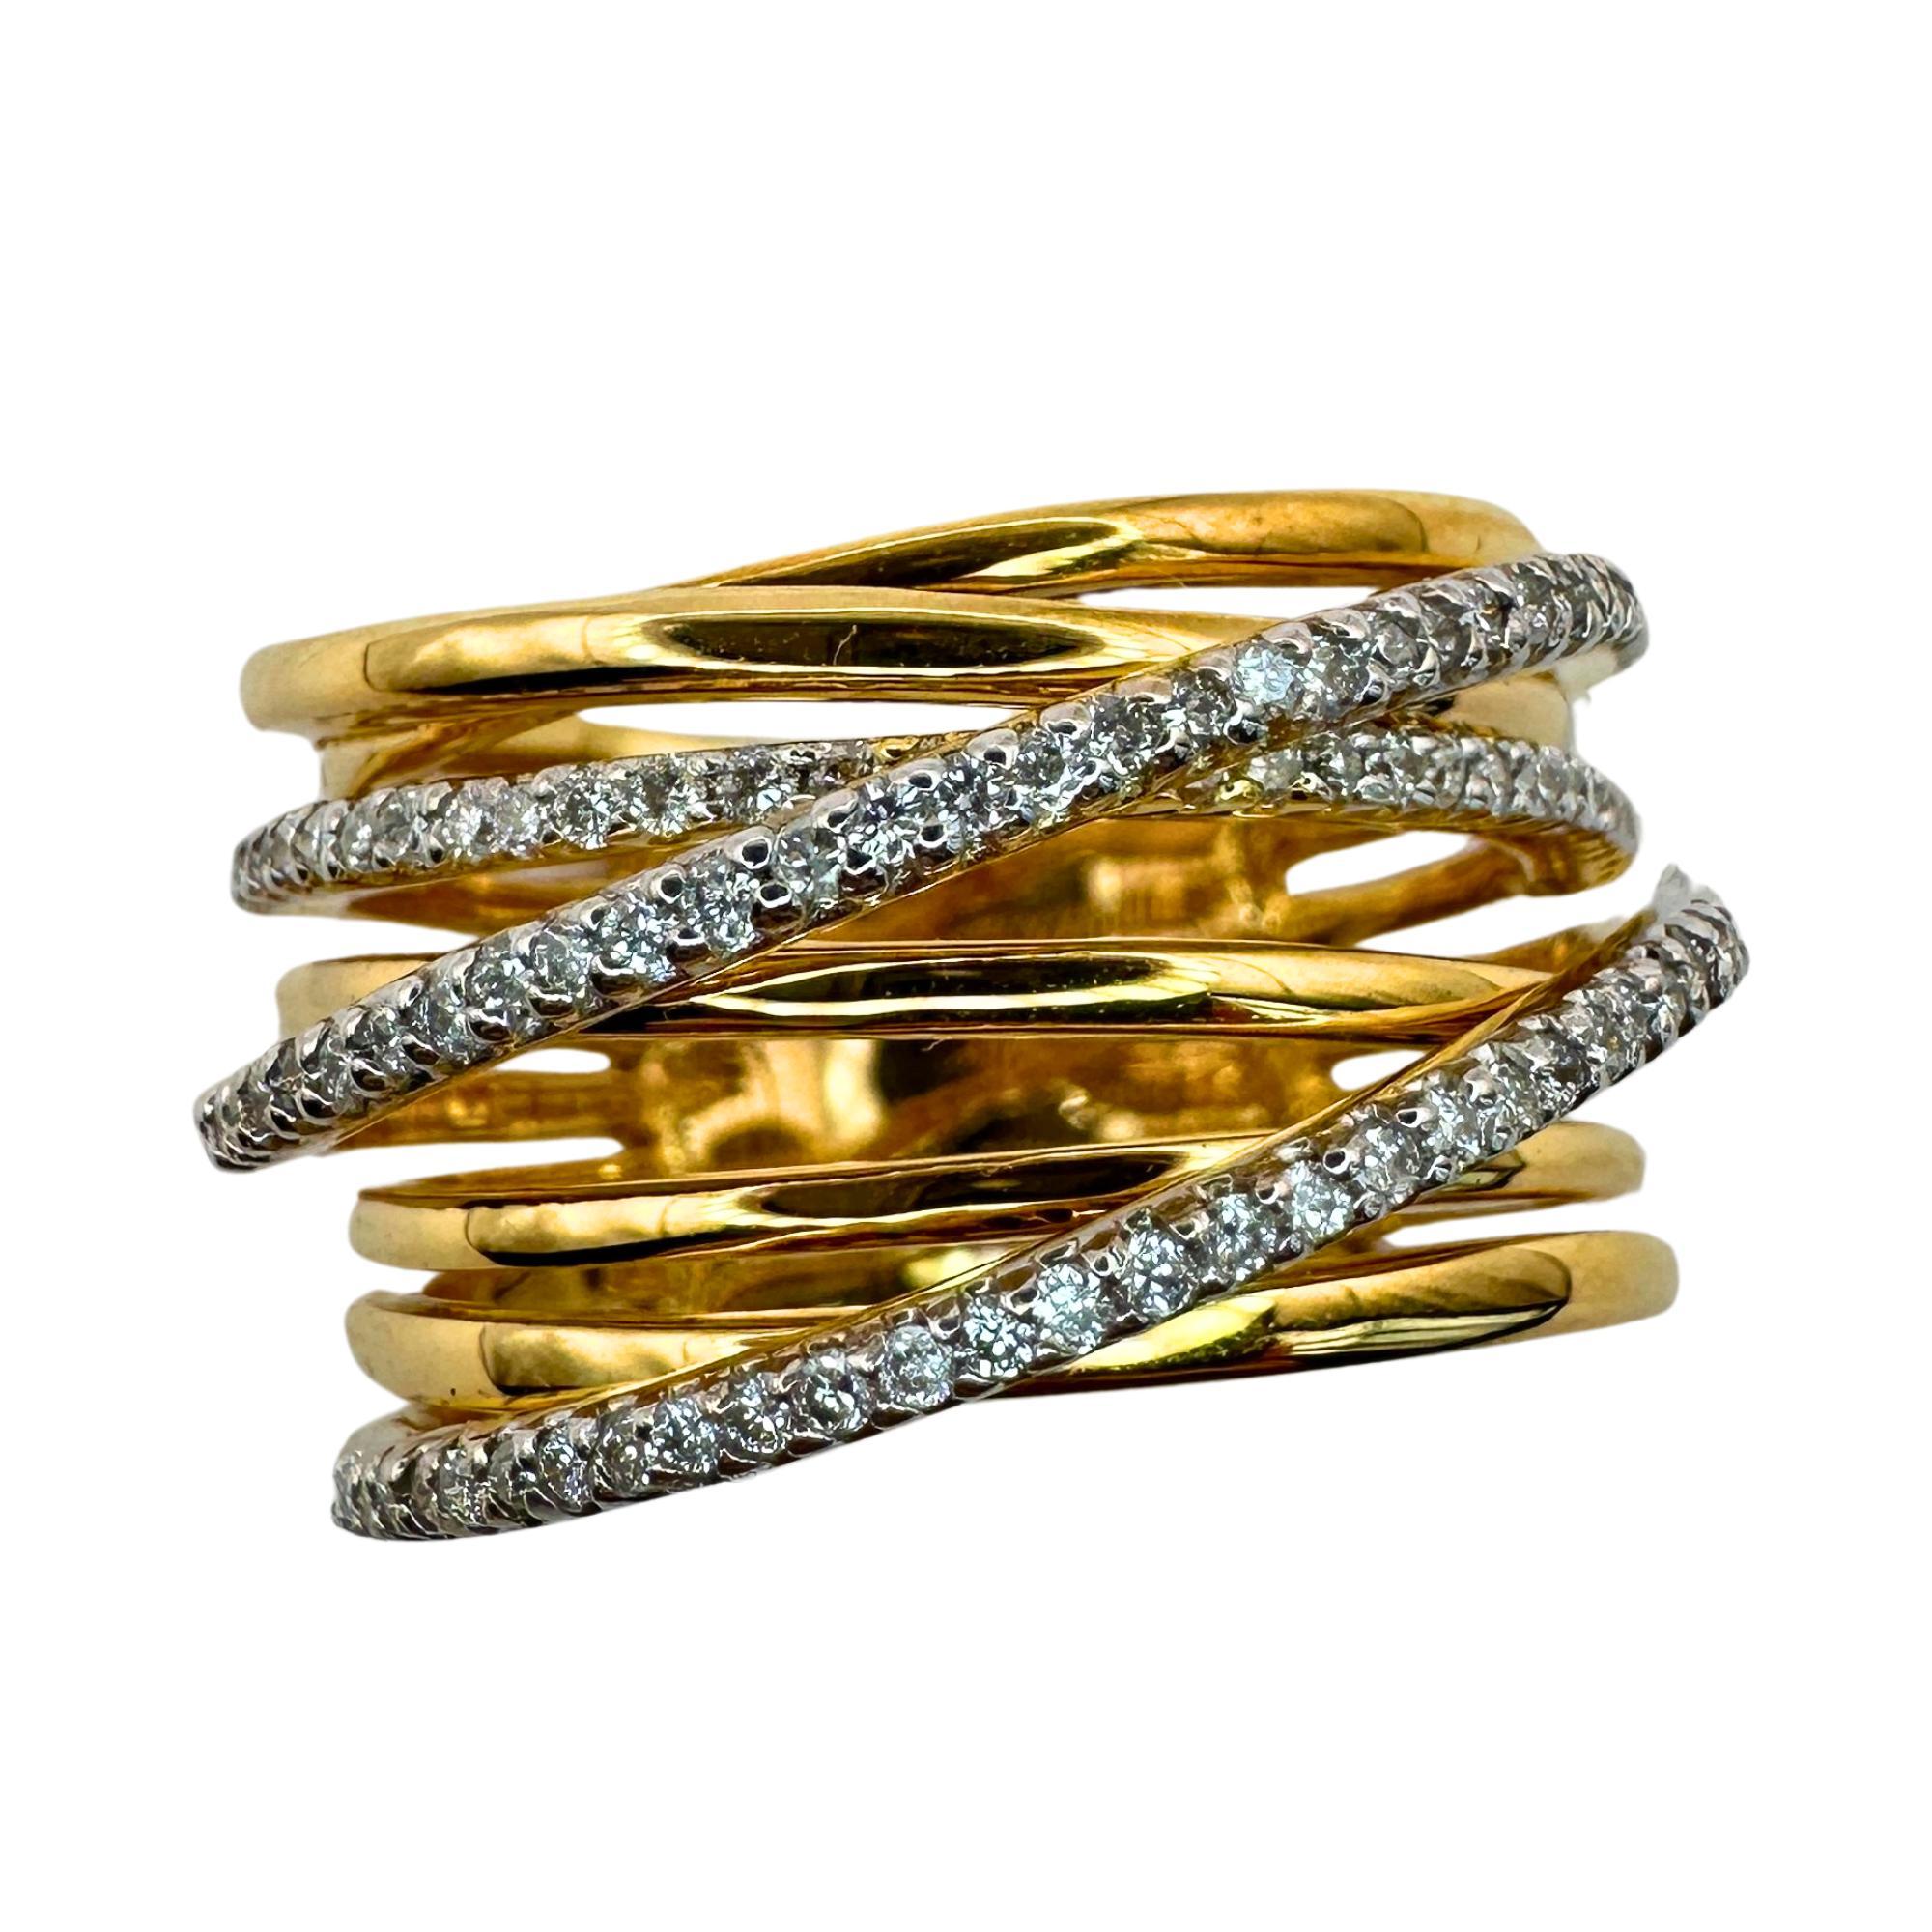 Cette superbe bague en or jaune 18 carats présente un large anneau qui crée un look unique et accrocheur. Le style croisé apporte une touche d'élégance et les 0,46 carats de diamants une touche d'éclat. En bon état avec un poids de 11,7 grammes,